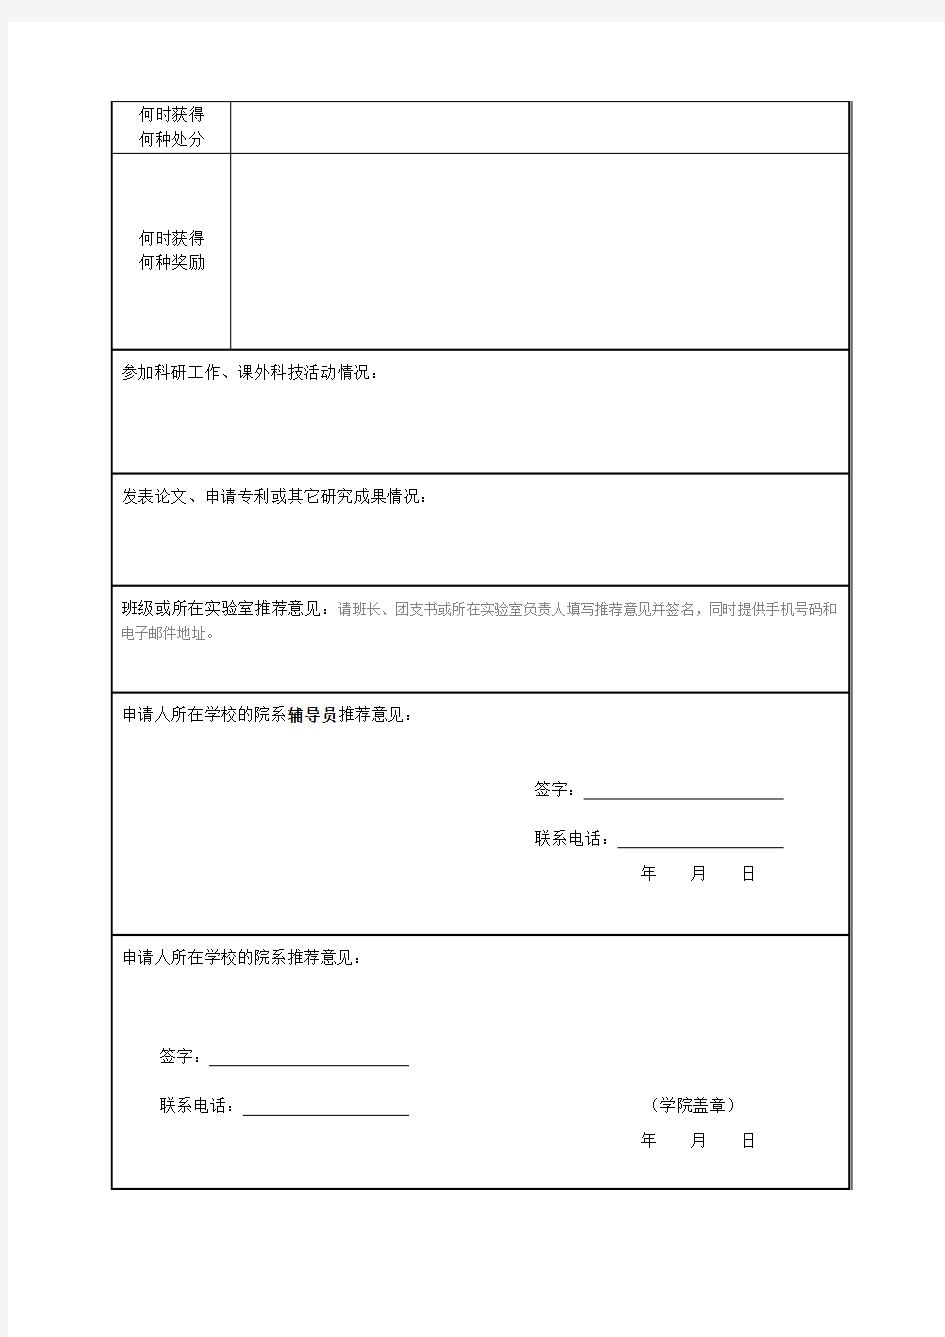 中科院上海有机化学研究所夏令营申请表